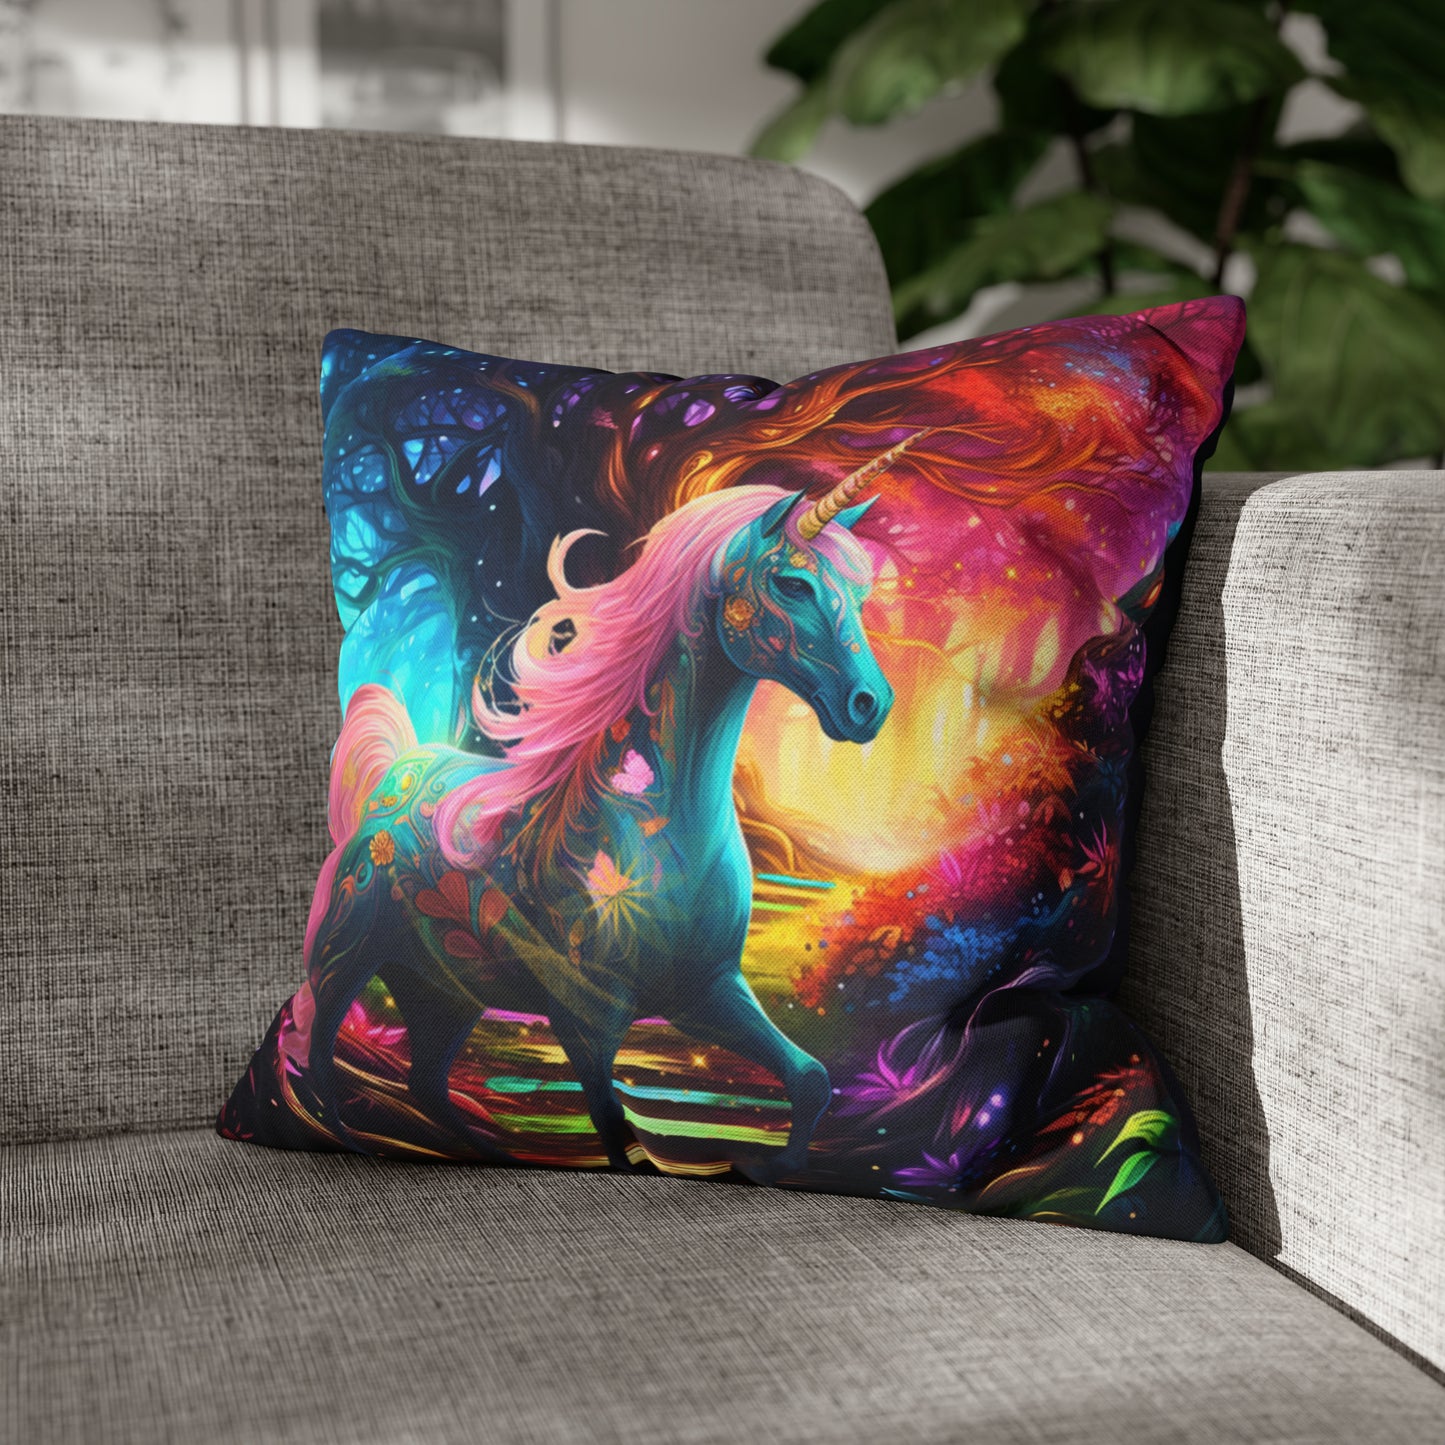 Square Pillow - Unicorn Luna 2